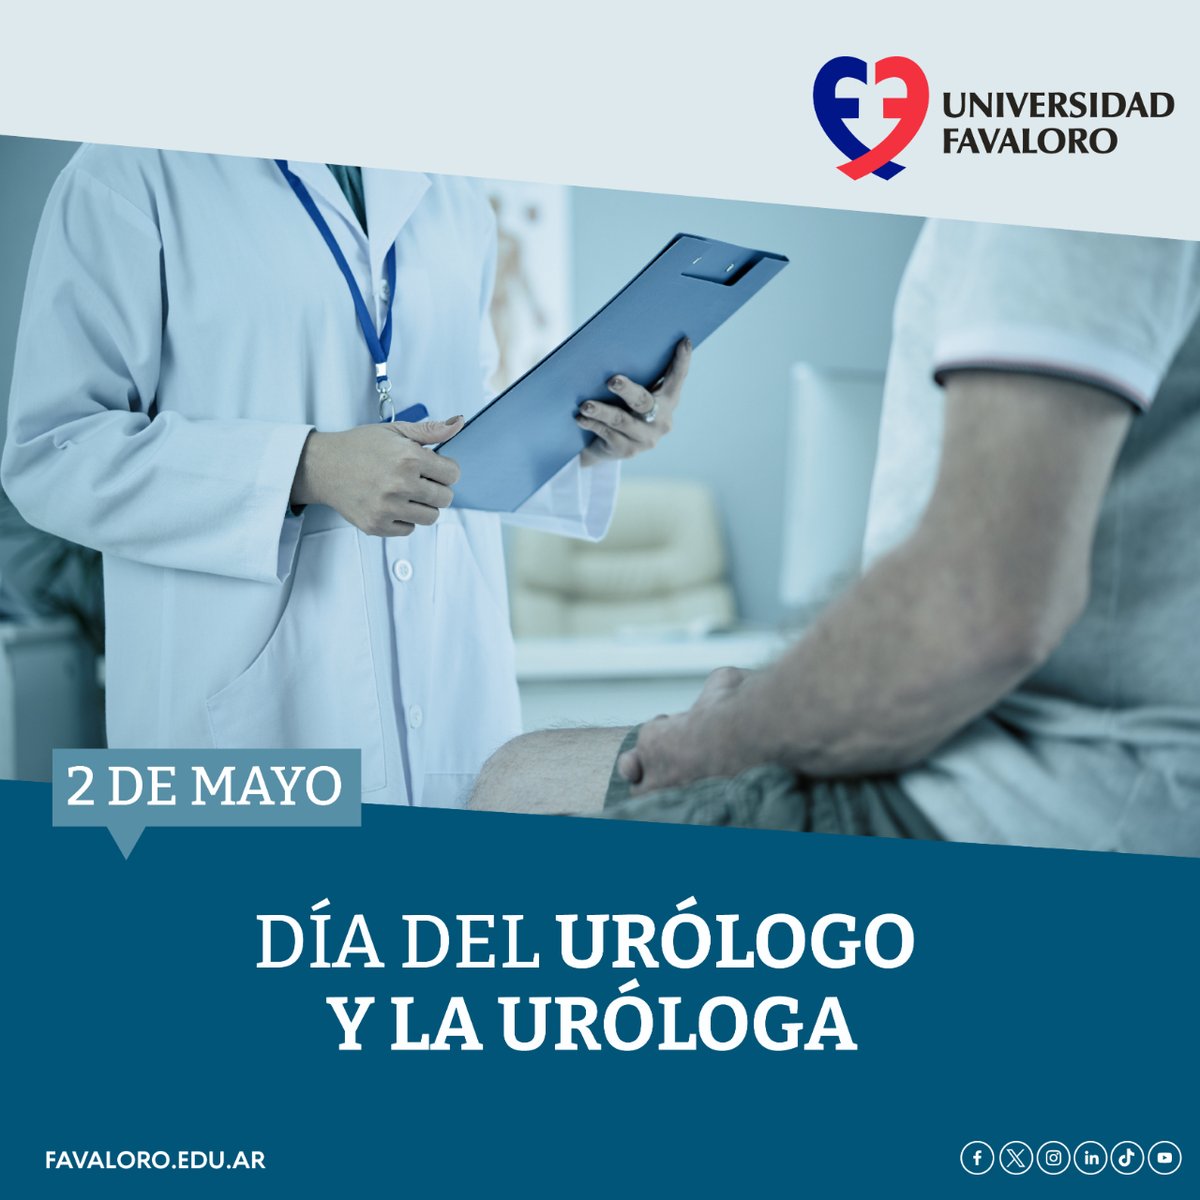 📅¡Saludamos a los médicos urólogos y las médicas urólogas en su día!👨‍⚕️👩‍⚕️👏

#DíadelUrólogo #Urología #Medicina #Salud #CuidadoDeLaSalud #UniversidadFavaloro